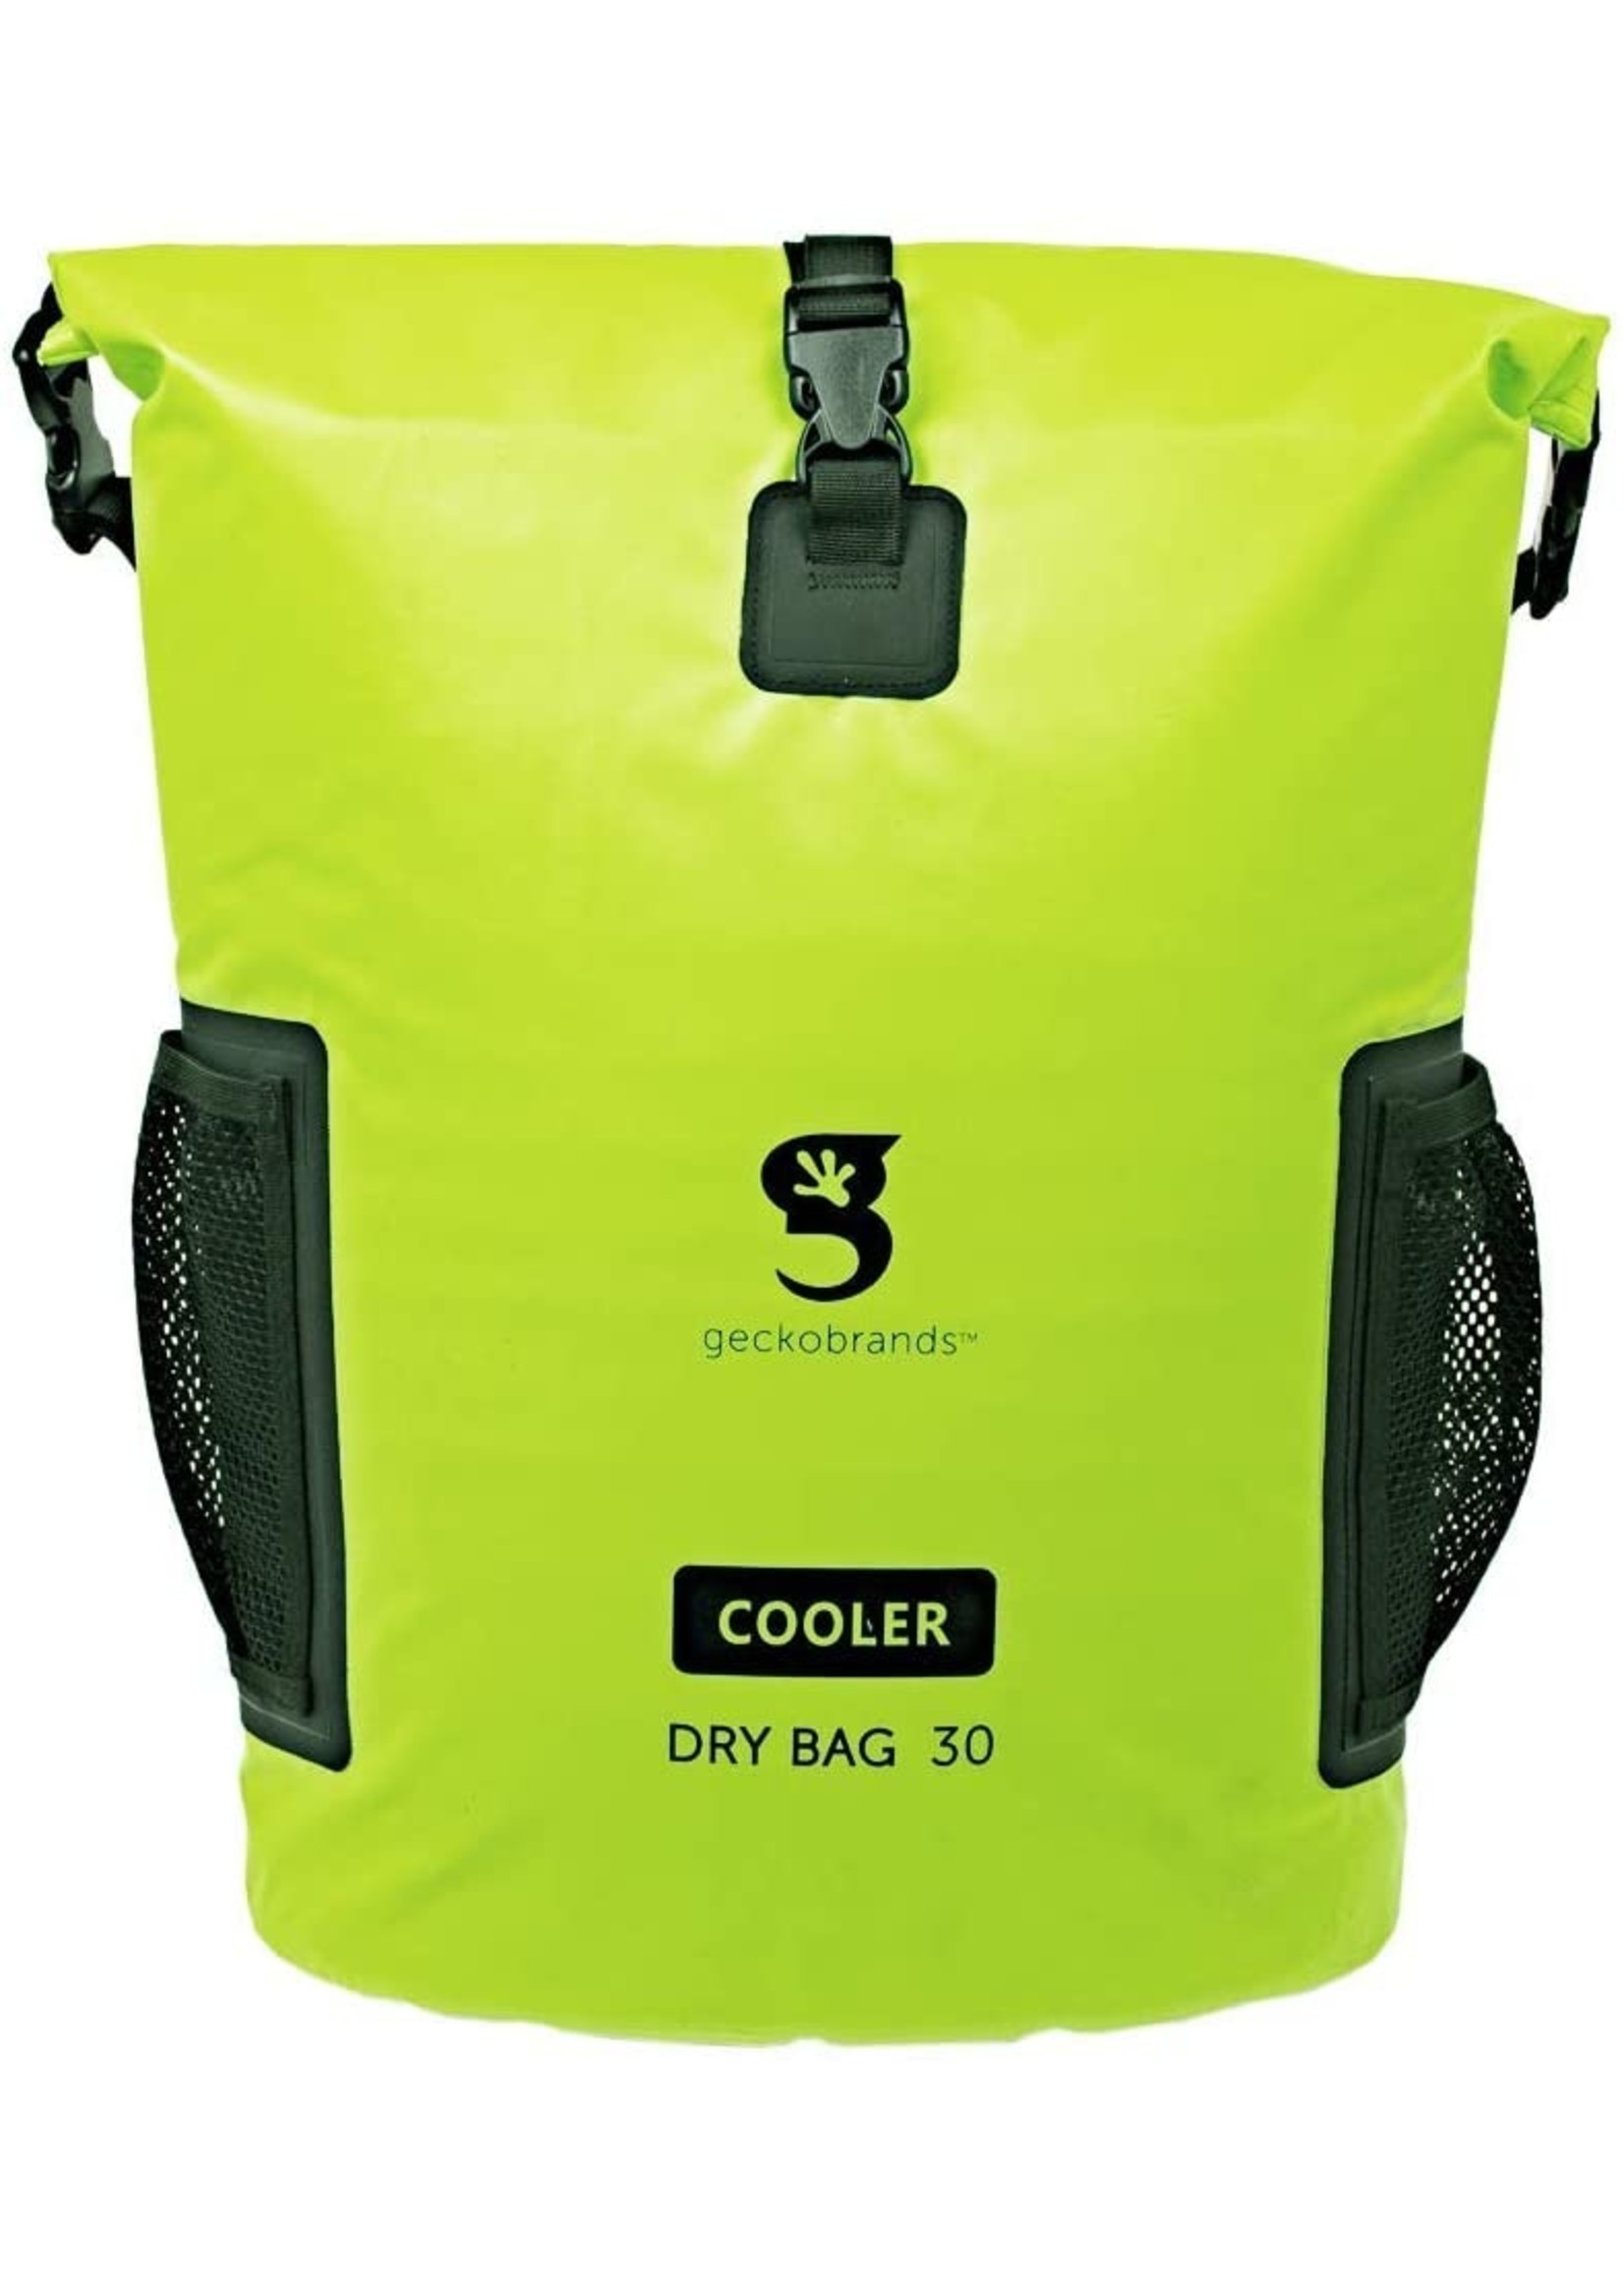 Geckobrands Backpack Dry Bag 30L Cooler